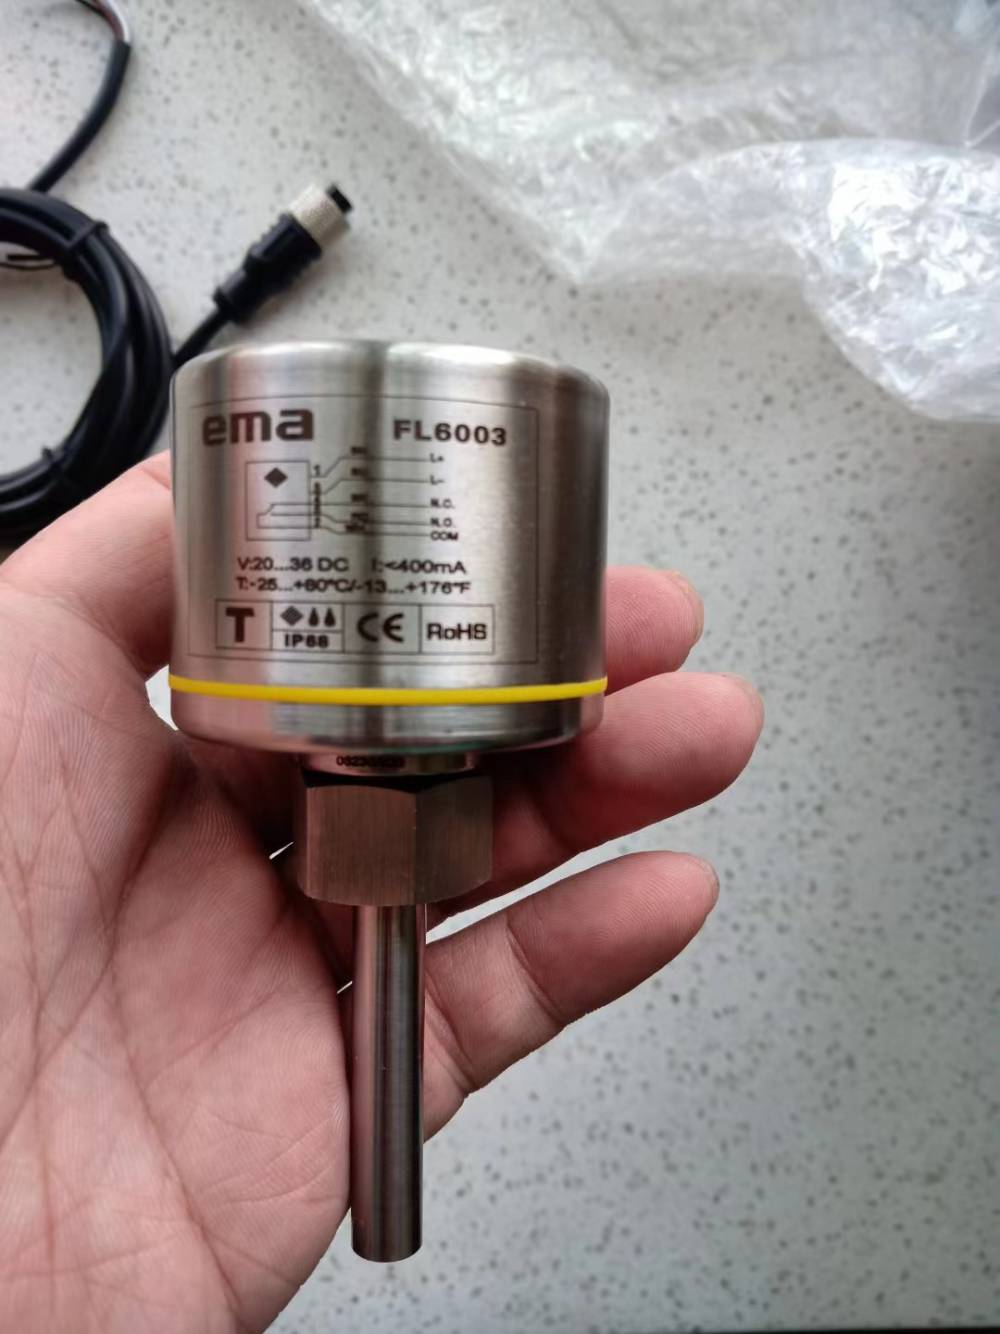 ema伊玛FL6003智能型流动传感器可测量气体和液体流速